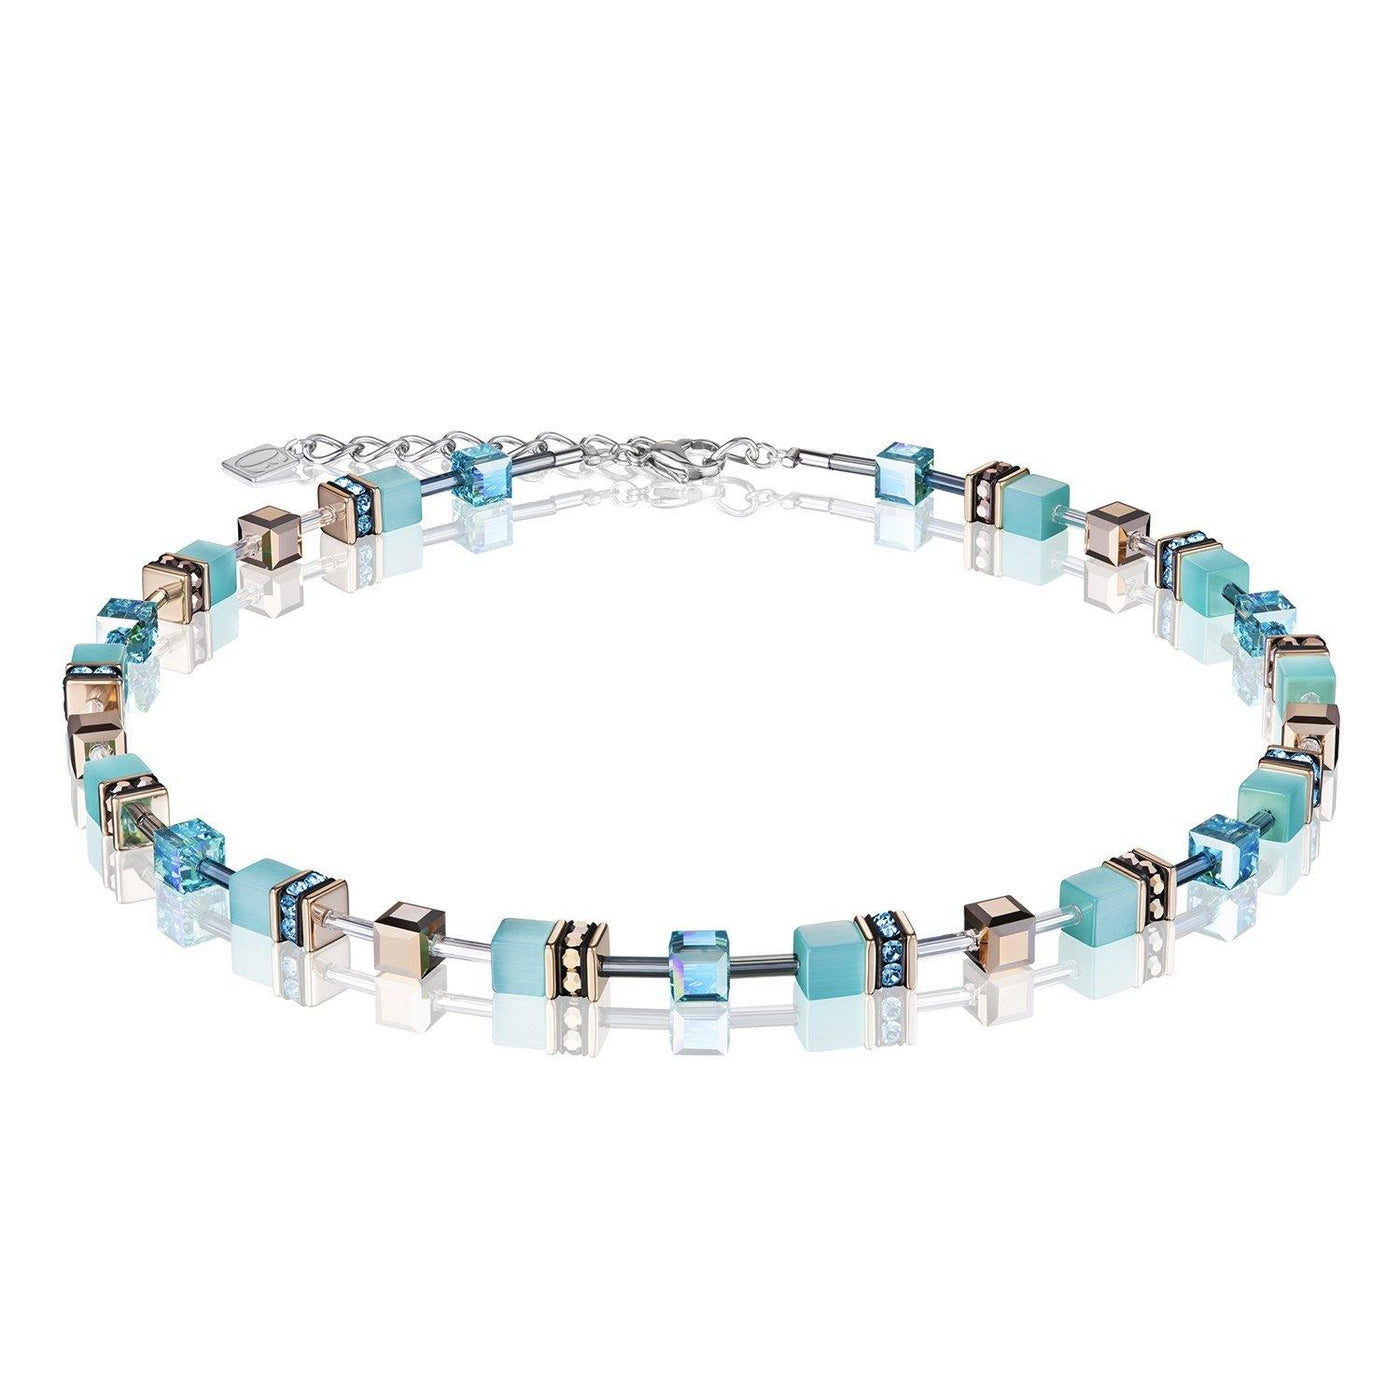 Coeur De Lion Aqua and Swarovski® Crystals GeoCUBE® Necklace - Rococo Jewellery